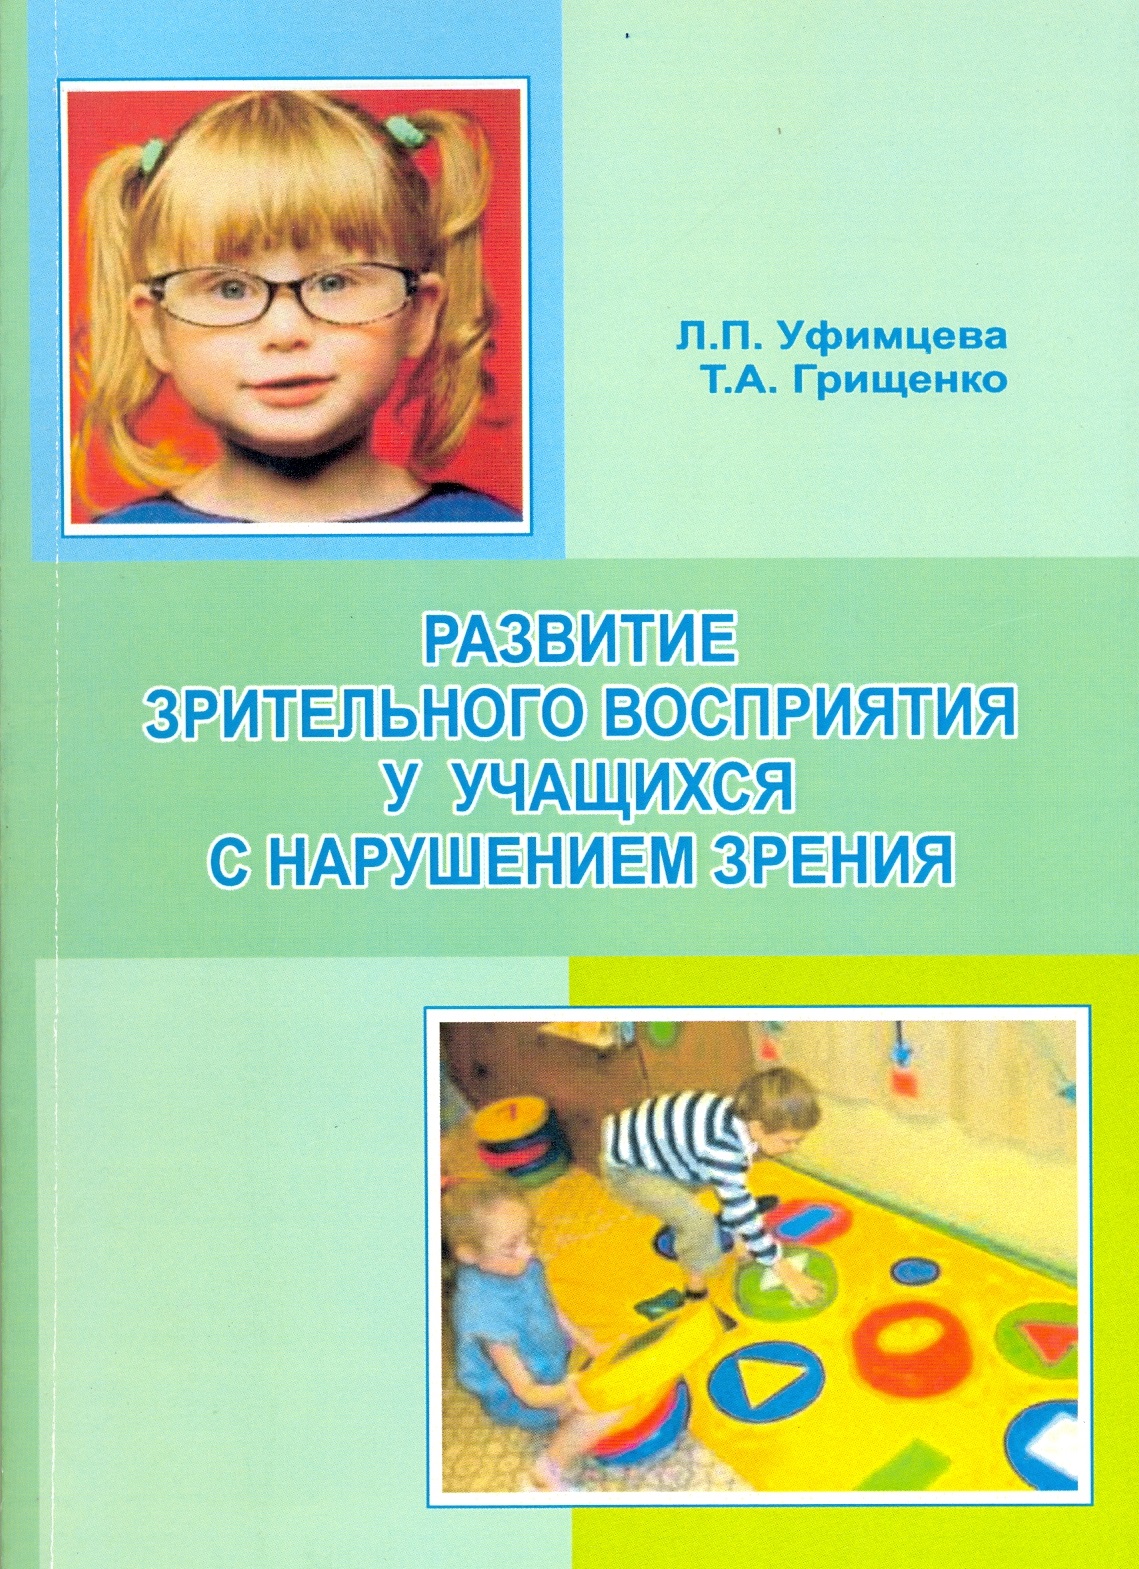 Программа для детей с нарушениями интеллекта. Пособия для детей с нарушением зрения. Учебники для детей с нарушением зрения. Книги для детей с нарушением зрения дошкольников. Дошкольники с нарушением зрения.